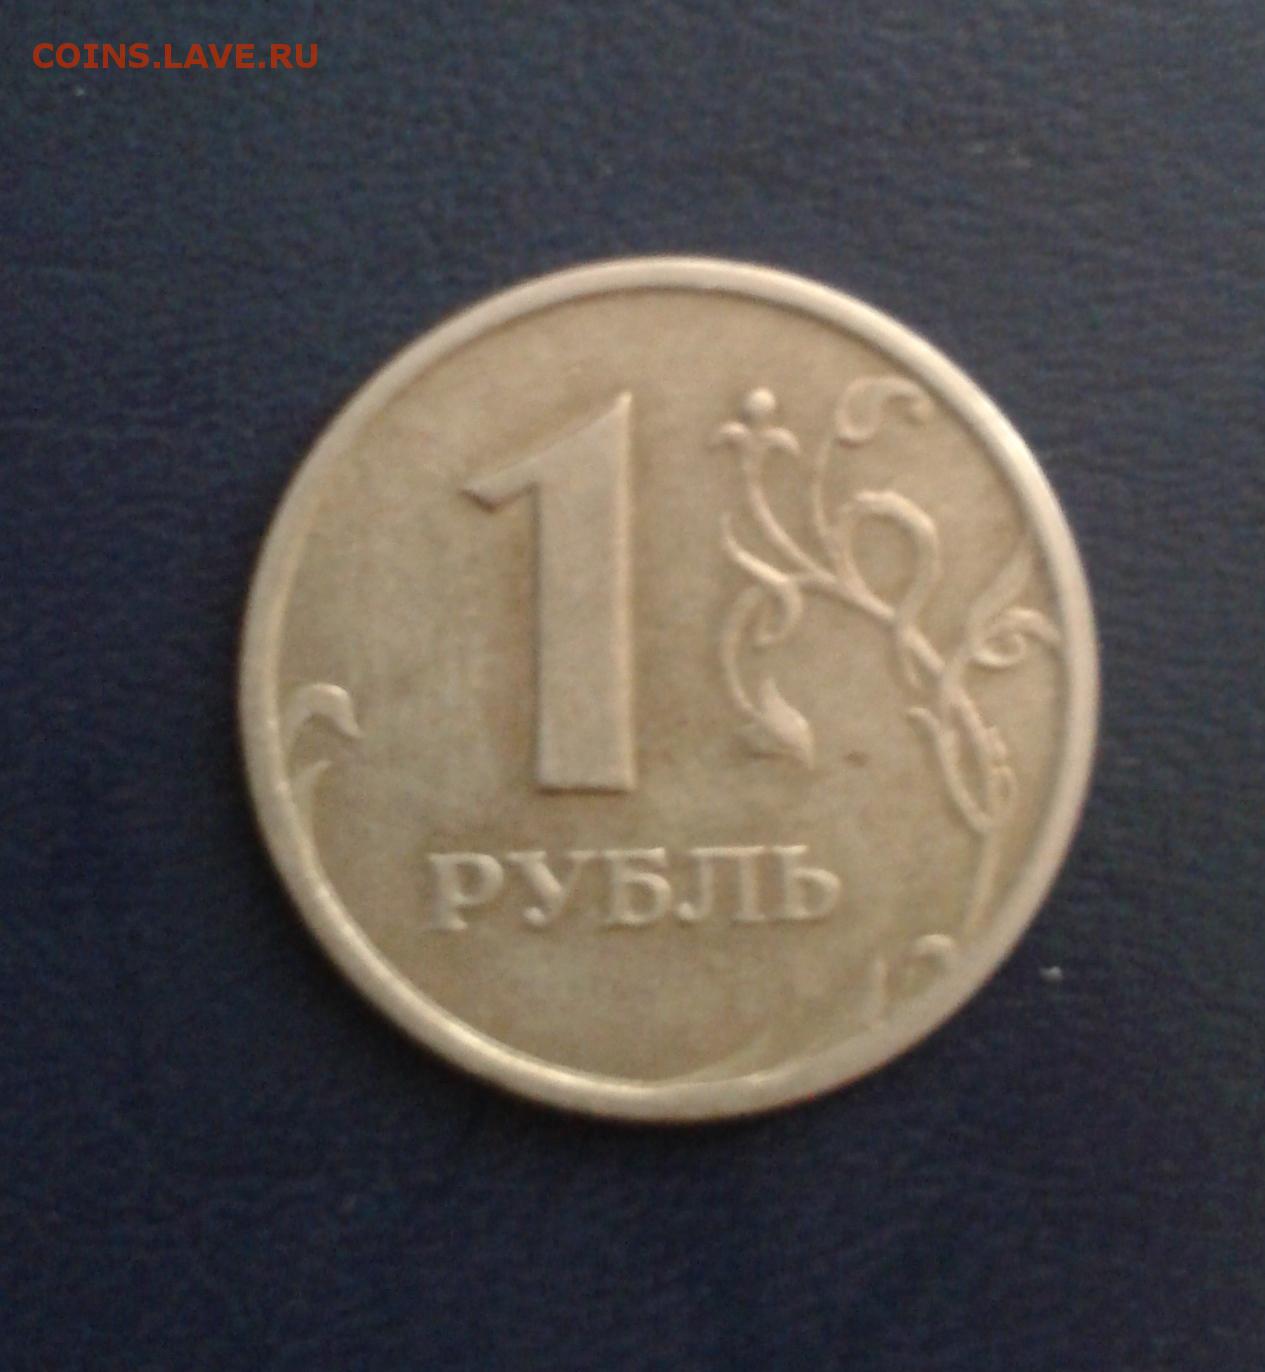 Продам рубли россии. Монеты с браком. Брак монеты 1 рубль 1997 года. 1 Рубль 1997 года. Монеты 1 2 5 10 рублей.